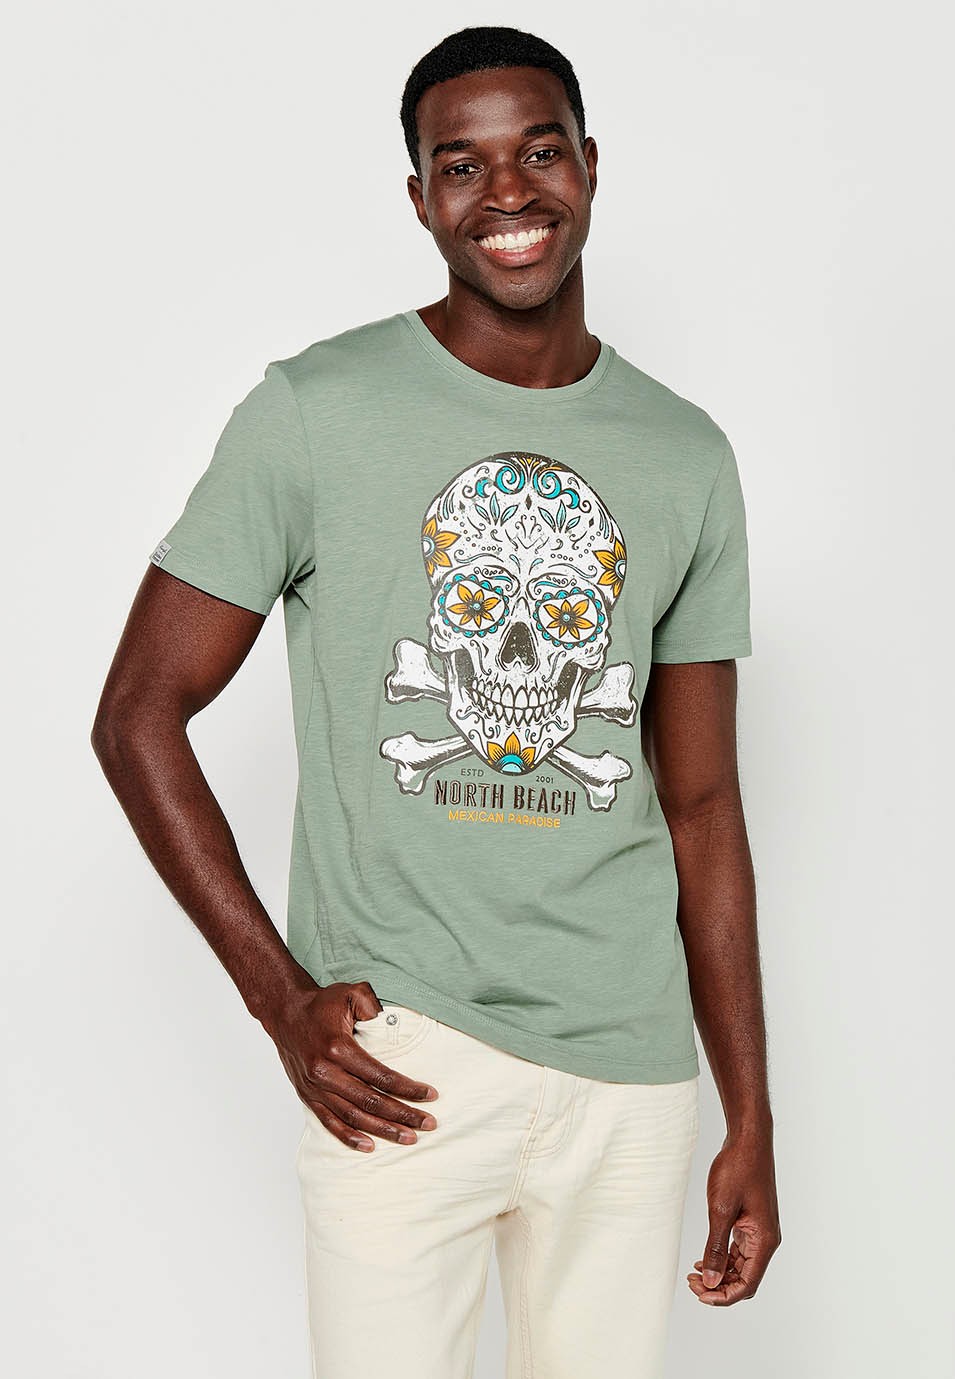 Herren-Kurzarm-T-Shirt aus Baumwolle mit Rundhalsausschnitt in Khaki-Farbe und Print vorne